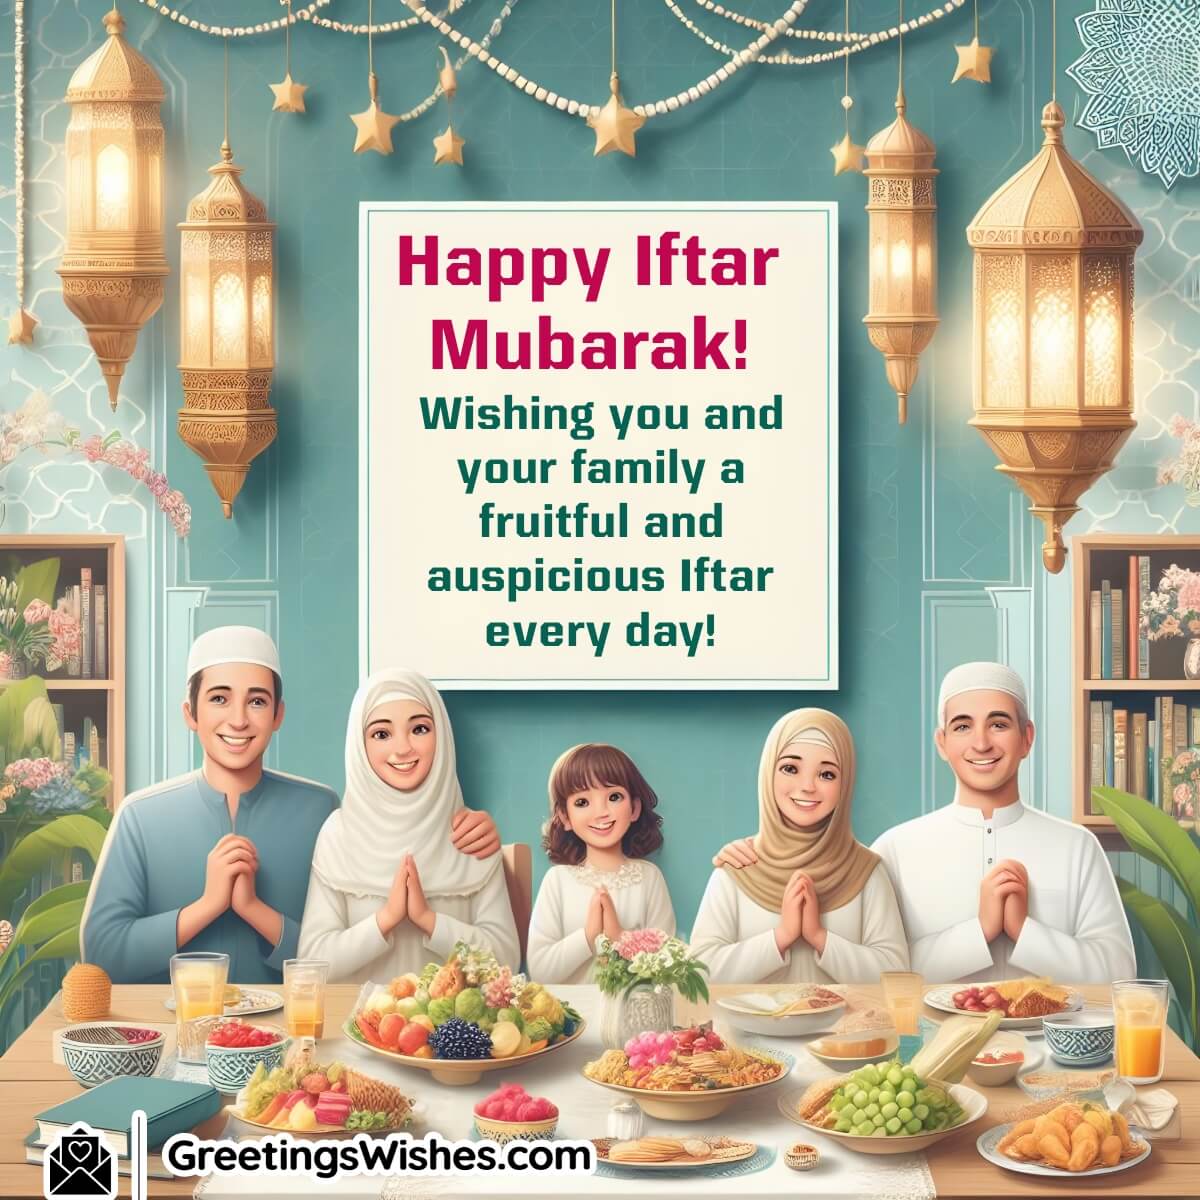 Wishing Happy Iftar Mubarak